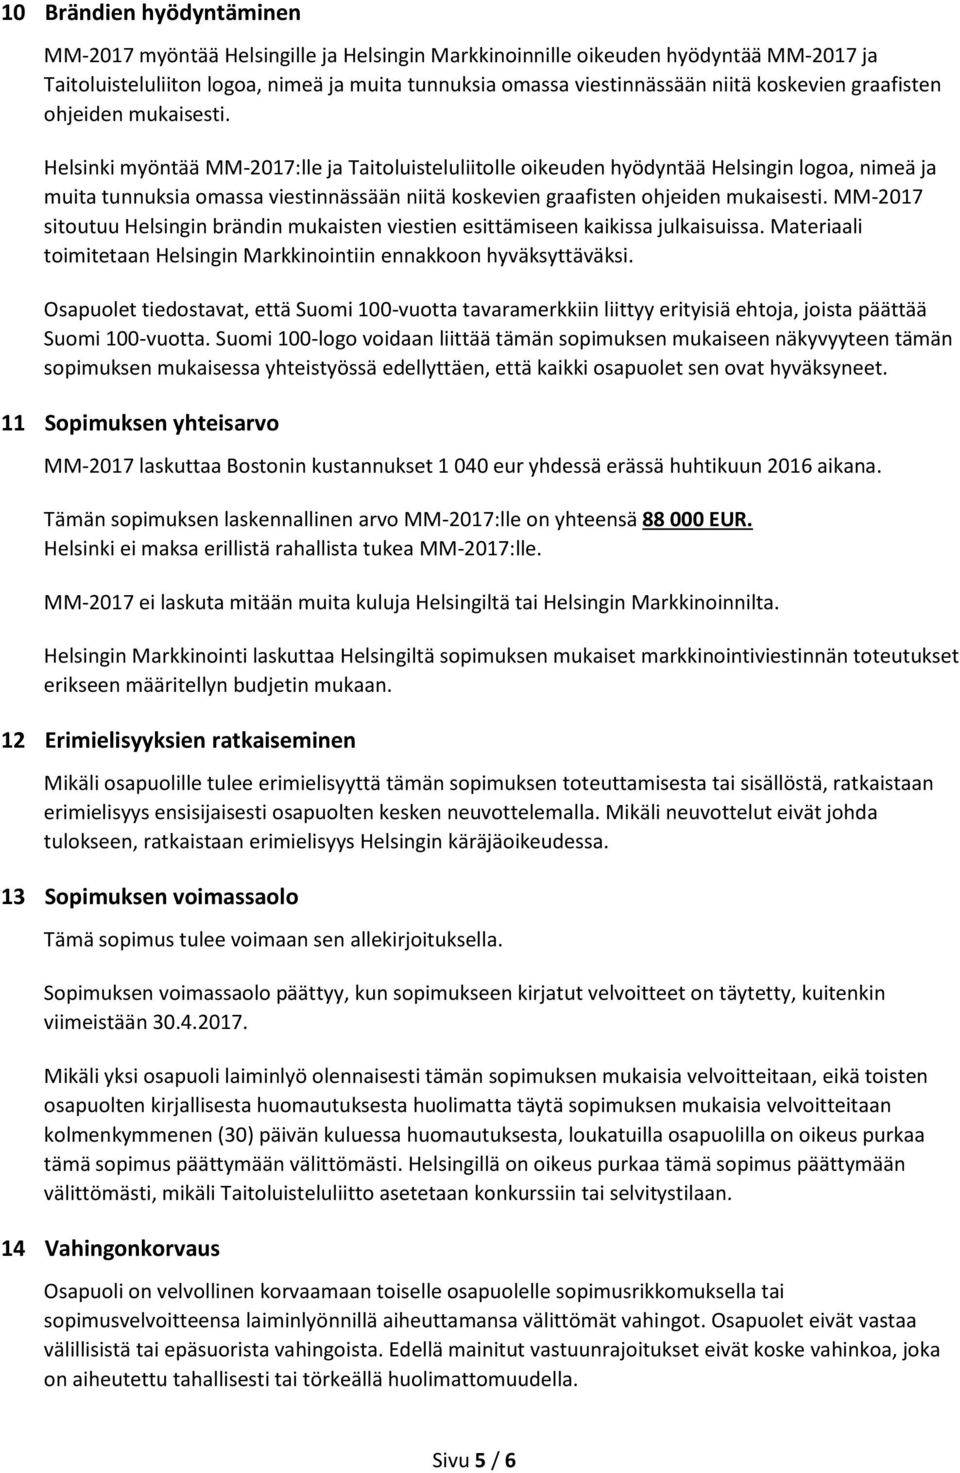 Helsinki myöntää MM-2017:lle ja Taitoluisteluliitolle oikeuden hyödyntää Helsingin logoa, nimeä ja muita tunnuksia omassa viestinnässään niitä  MM-2017 sitoutuu Helsingin brändin mukaisten viestien